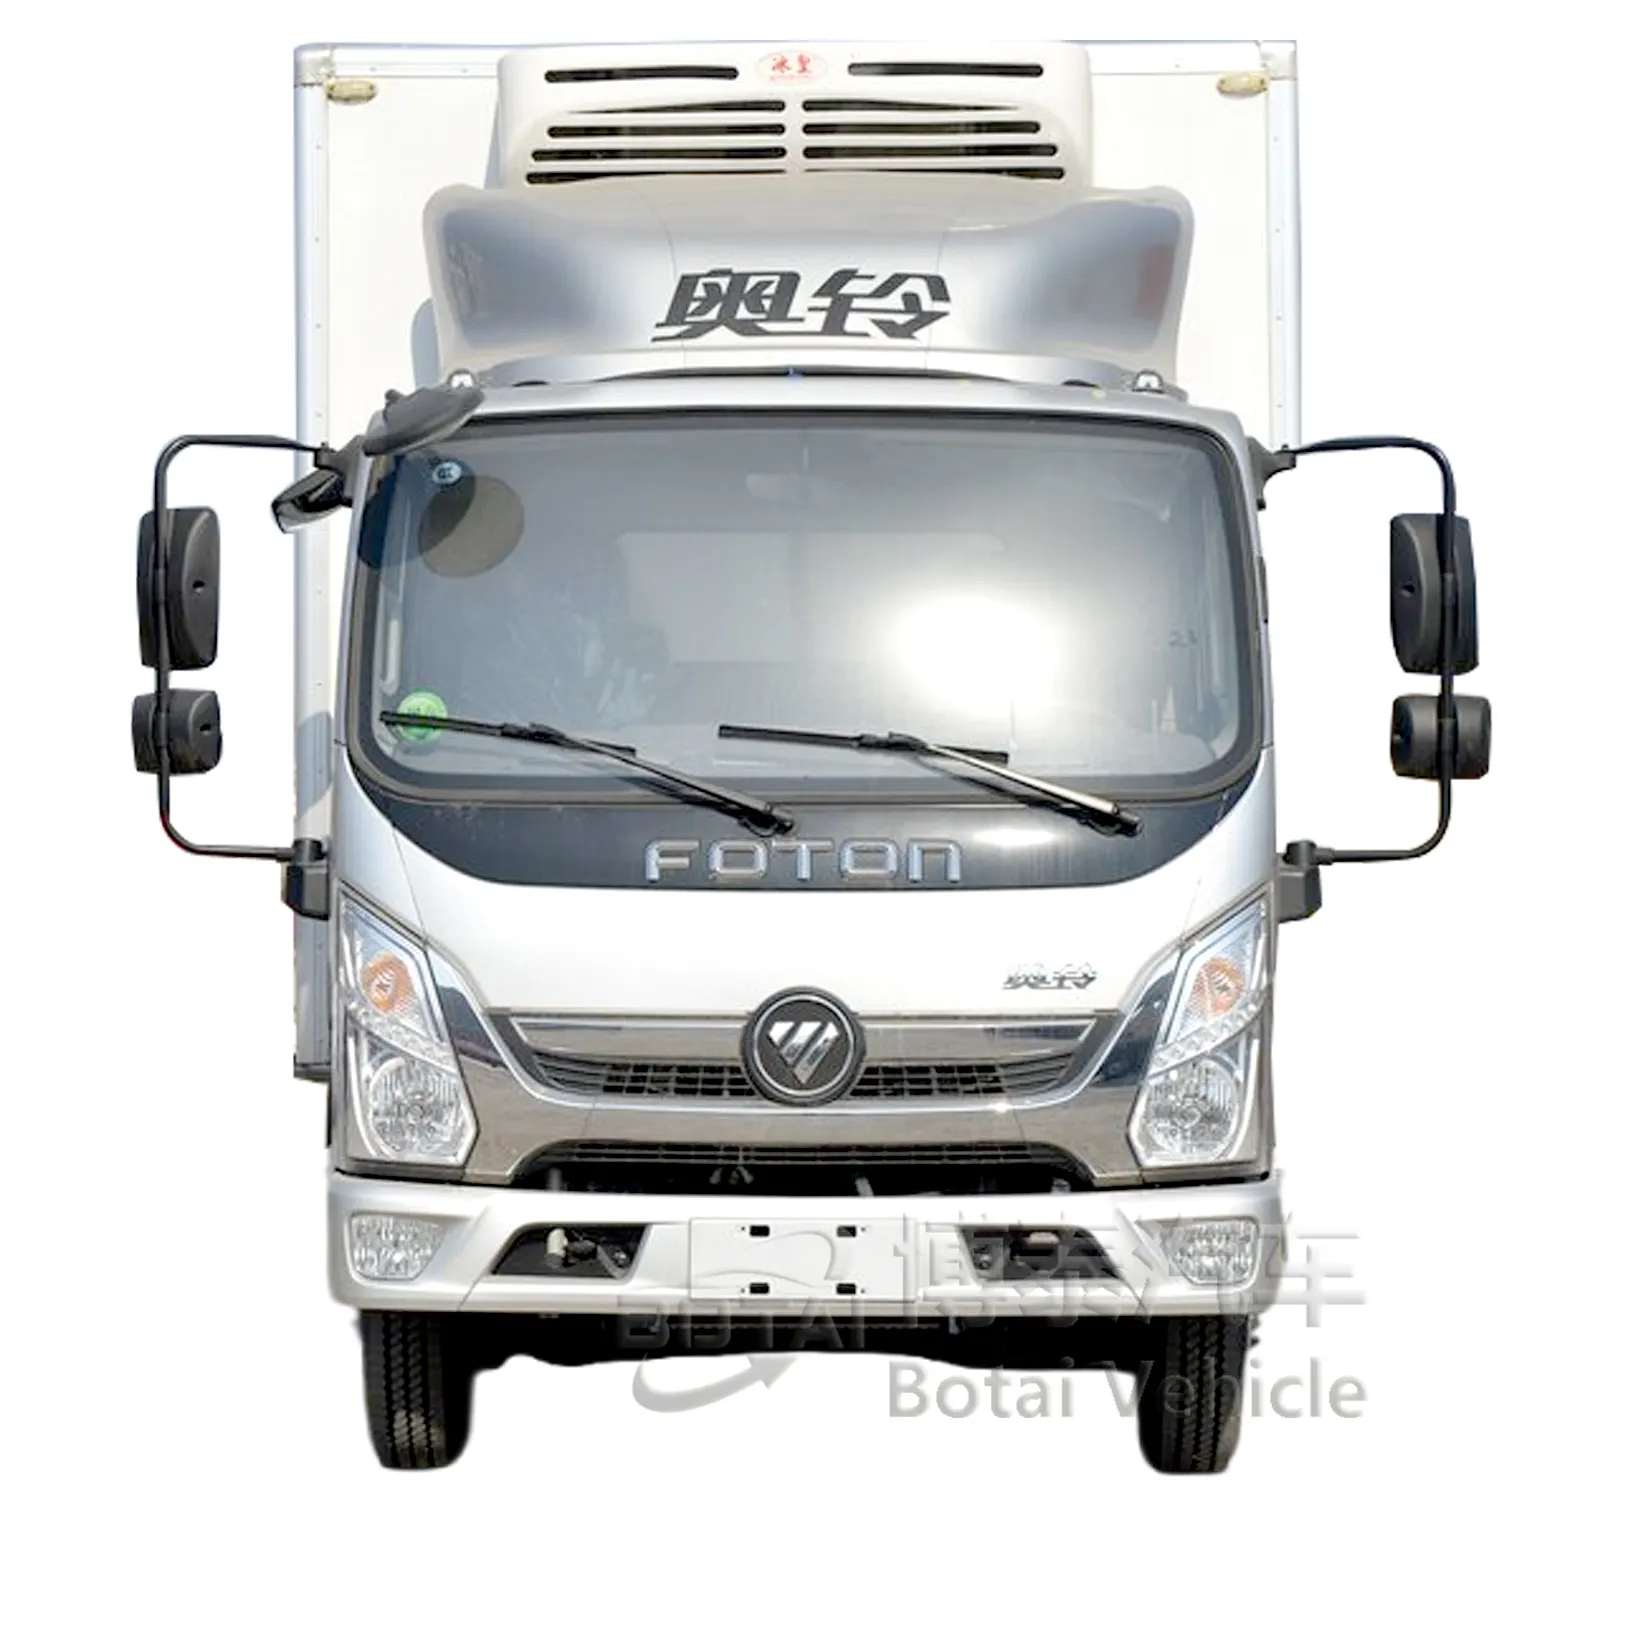 Vendita calda di camion refrigerato camion di trasporto merci a scatola singola di marca Foton